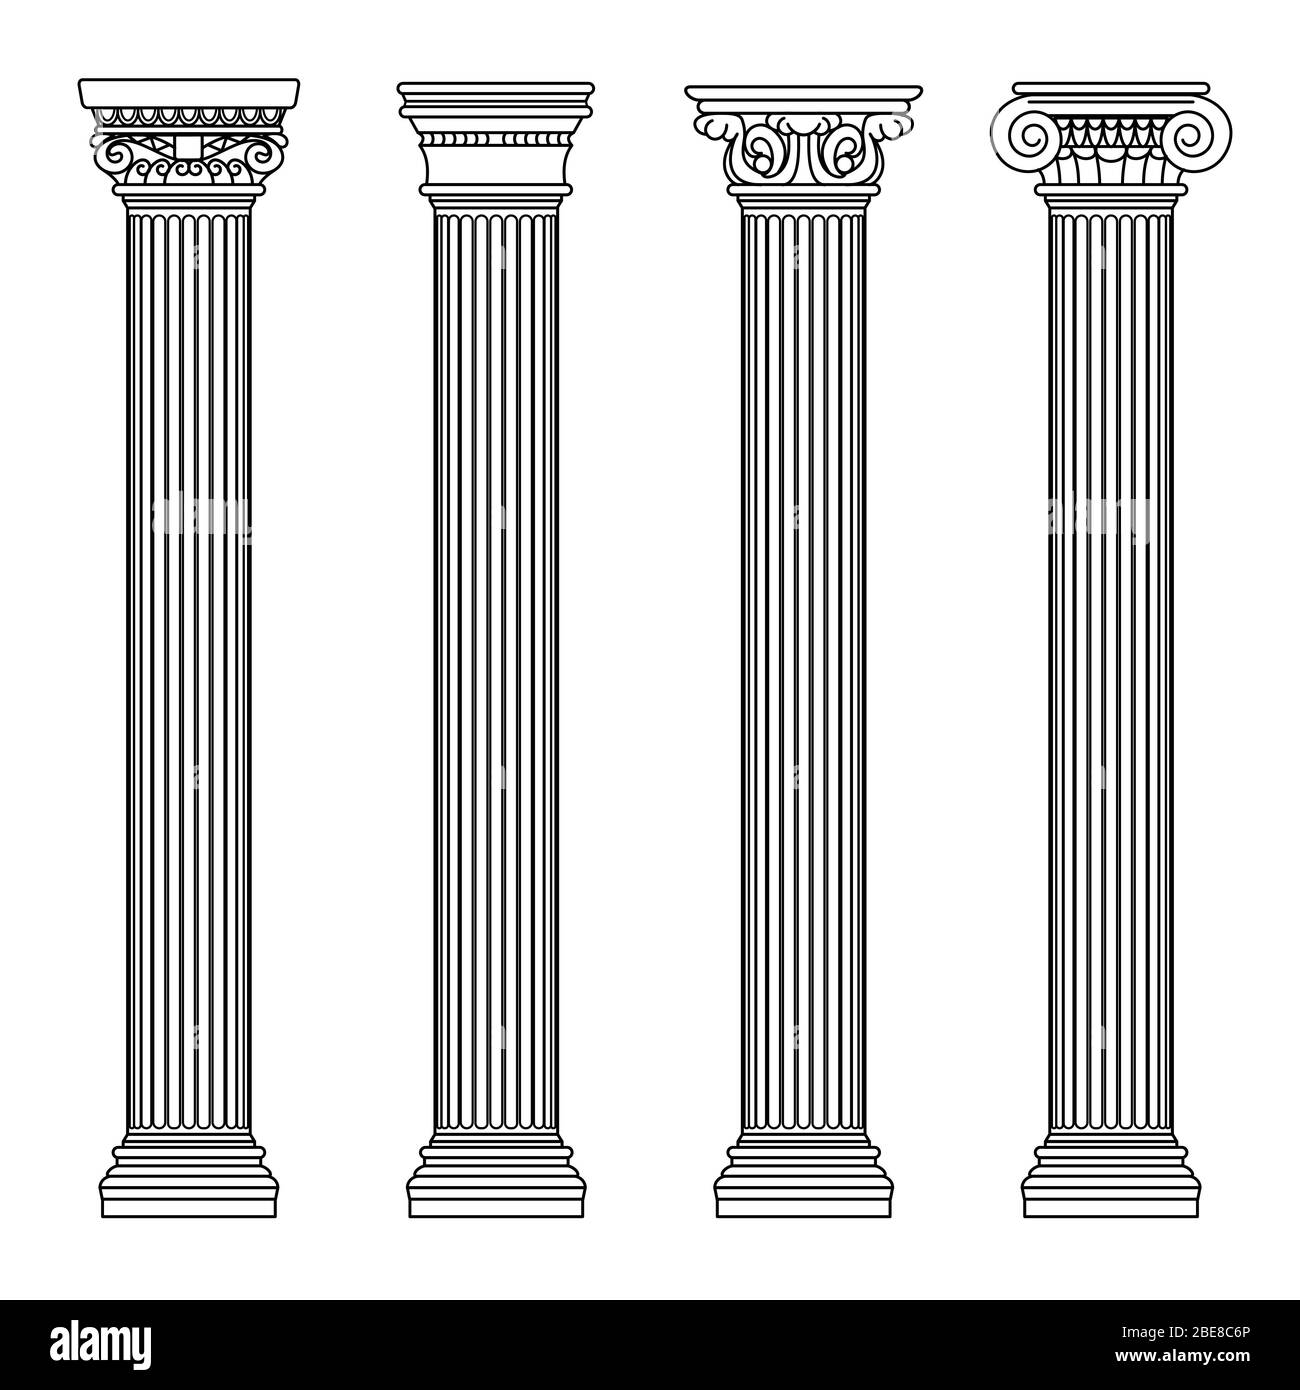 Architettura greca e romana colombe in pietra classica. Illustrazione vettoriale di contorno. Architettura colonna e pilastro antico Illustrazione Vettoriale